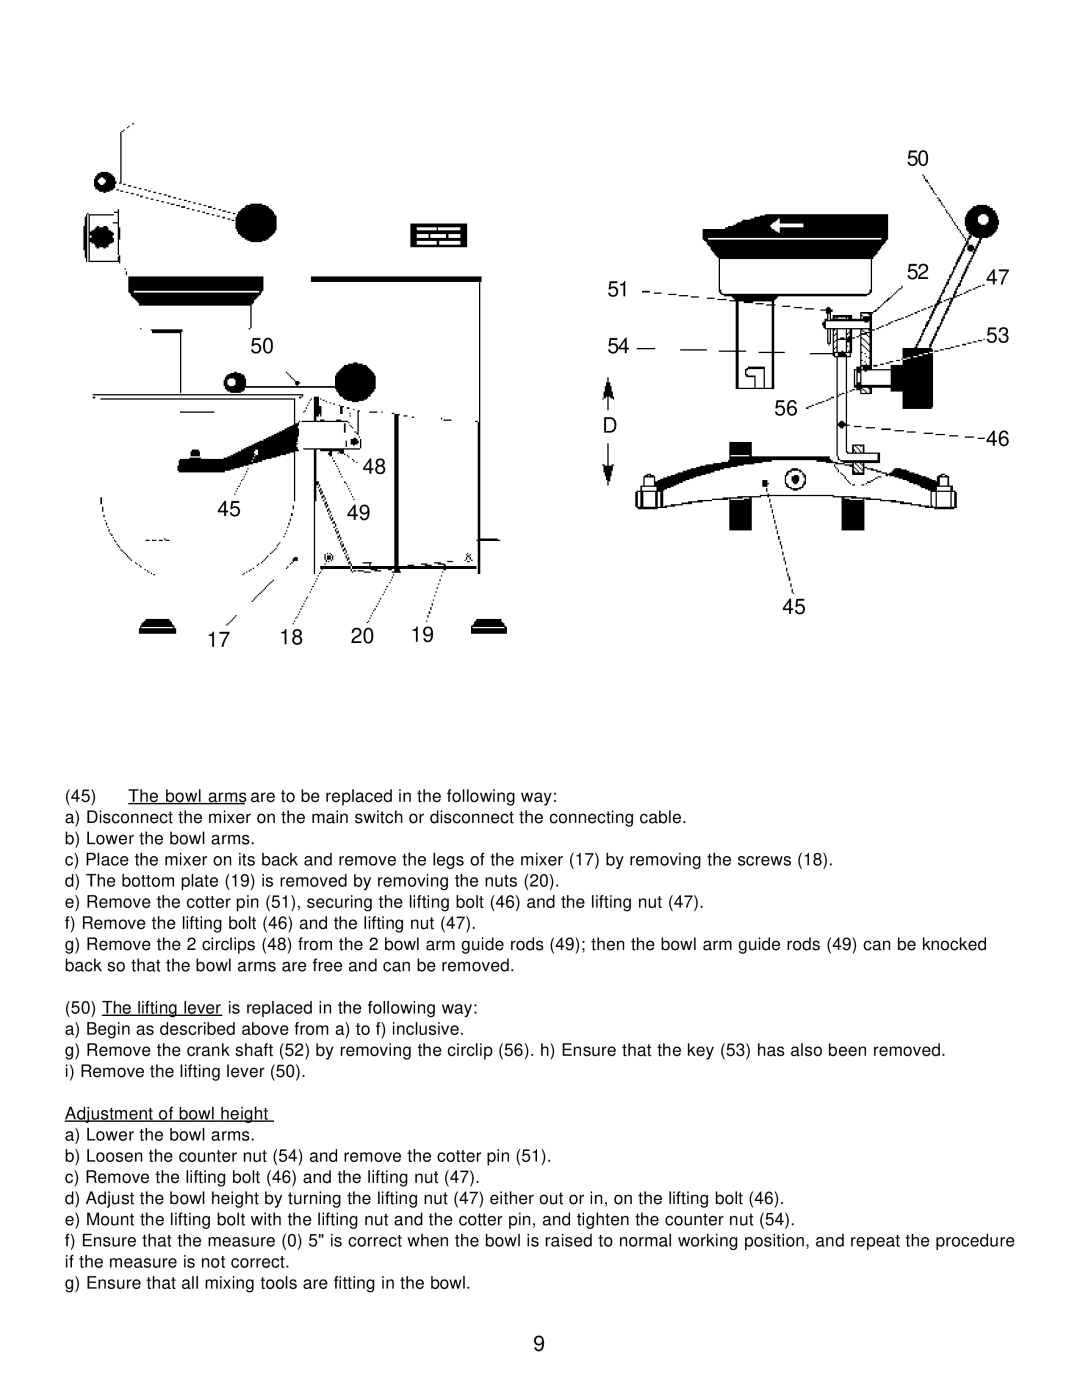 Varimixer W20 A, W20 J, W20 F operation manual 17 18 20 